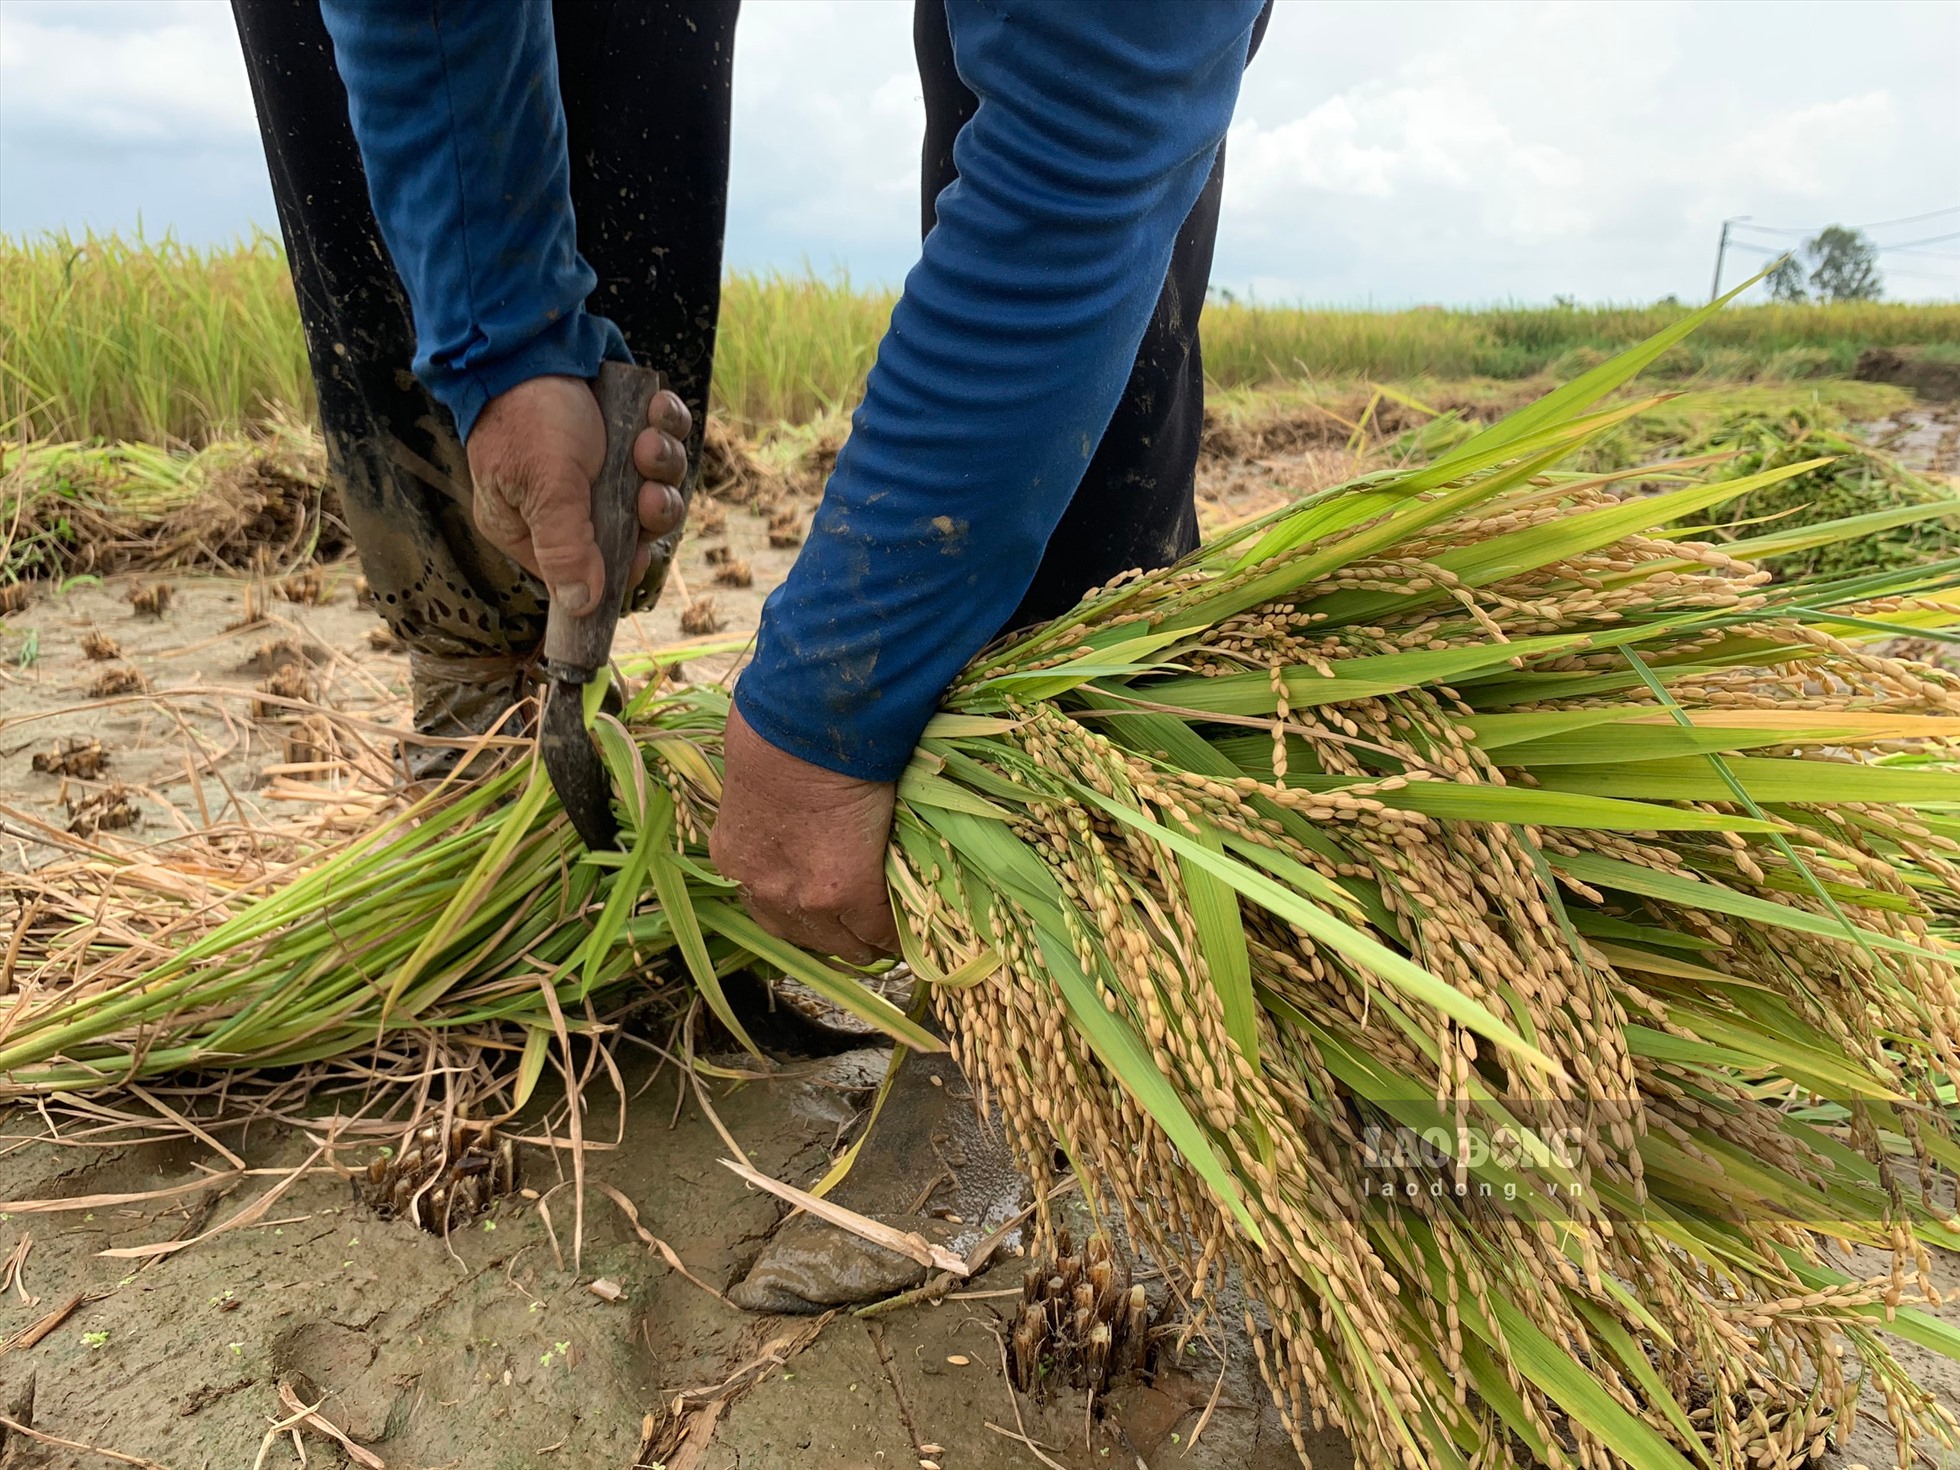 Lúa sau khi gặt xong sẽ được người dân dùng liềm xén để chia đôi cây lúa, tách phần gốc rạ và bông lúa ra.